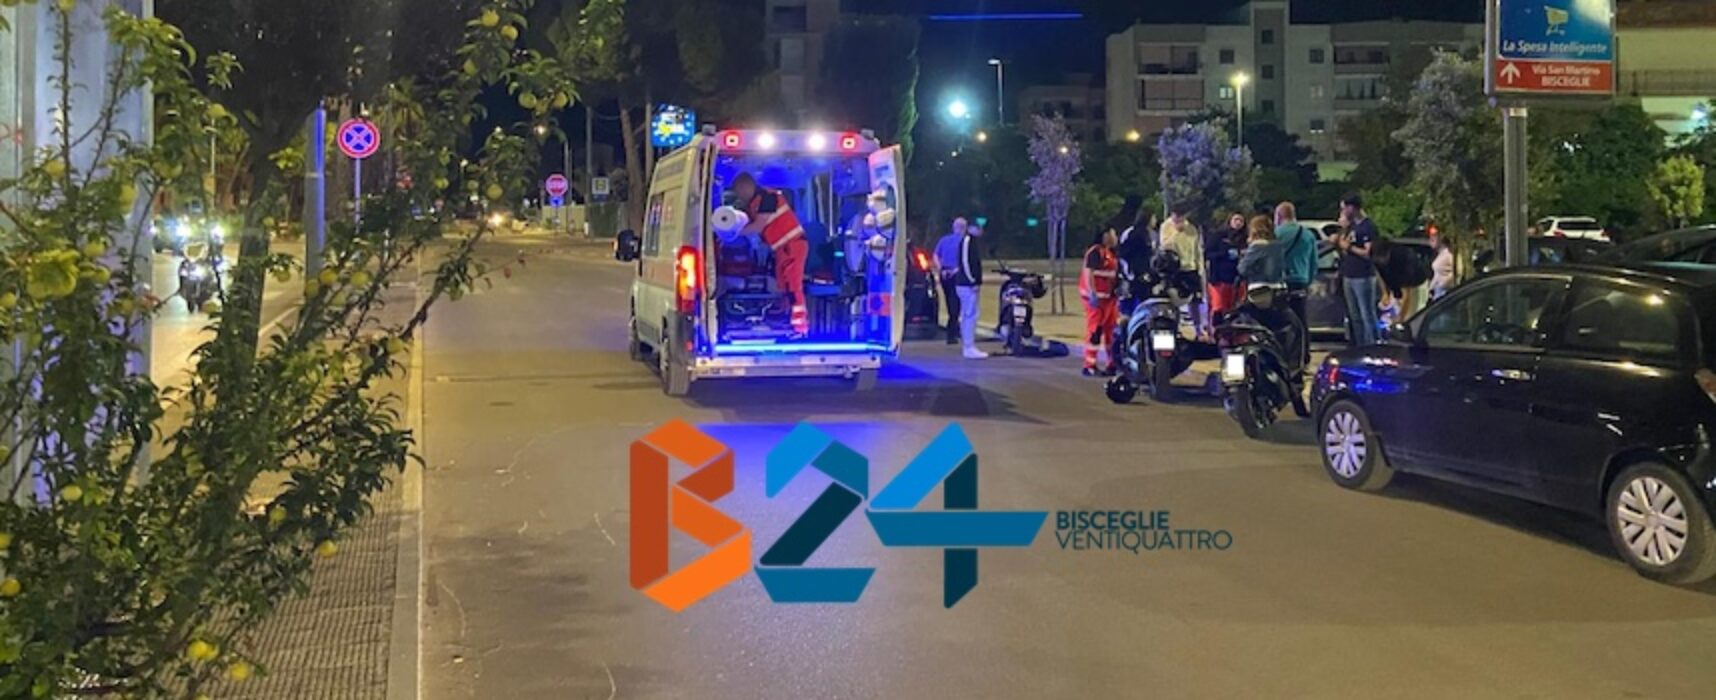 Uomo investito da scooter su via San Martino: due i feriti